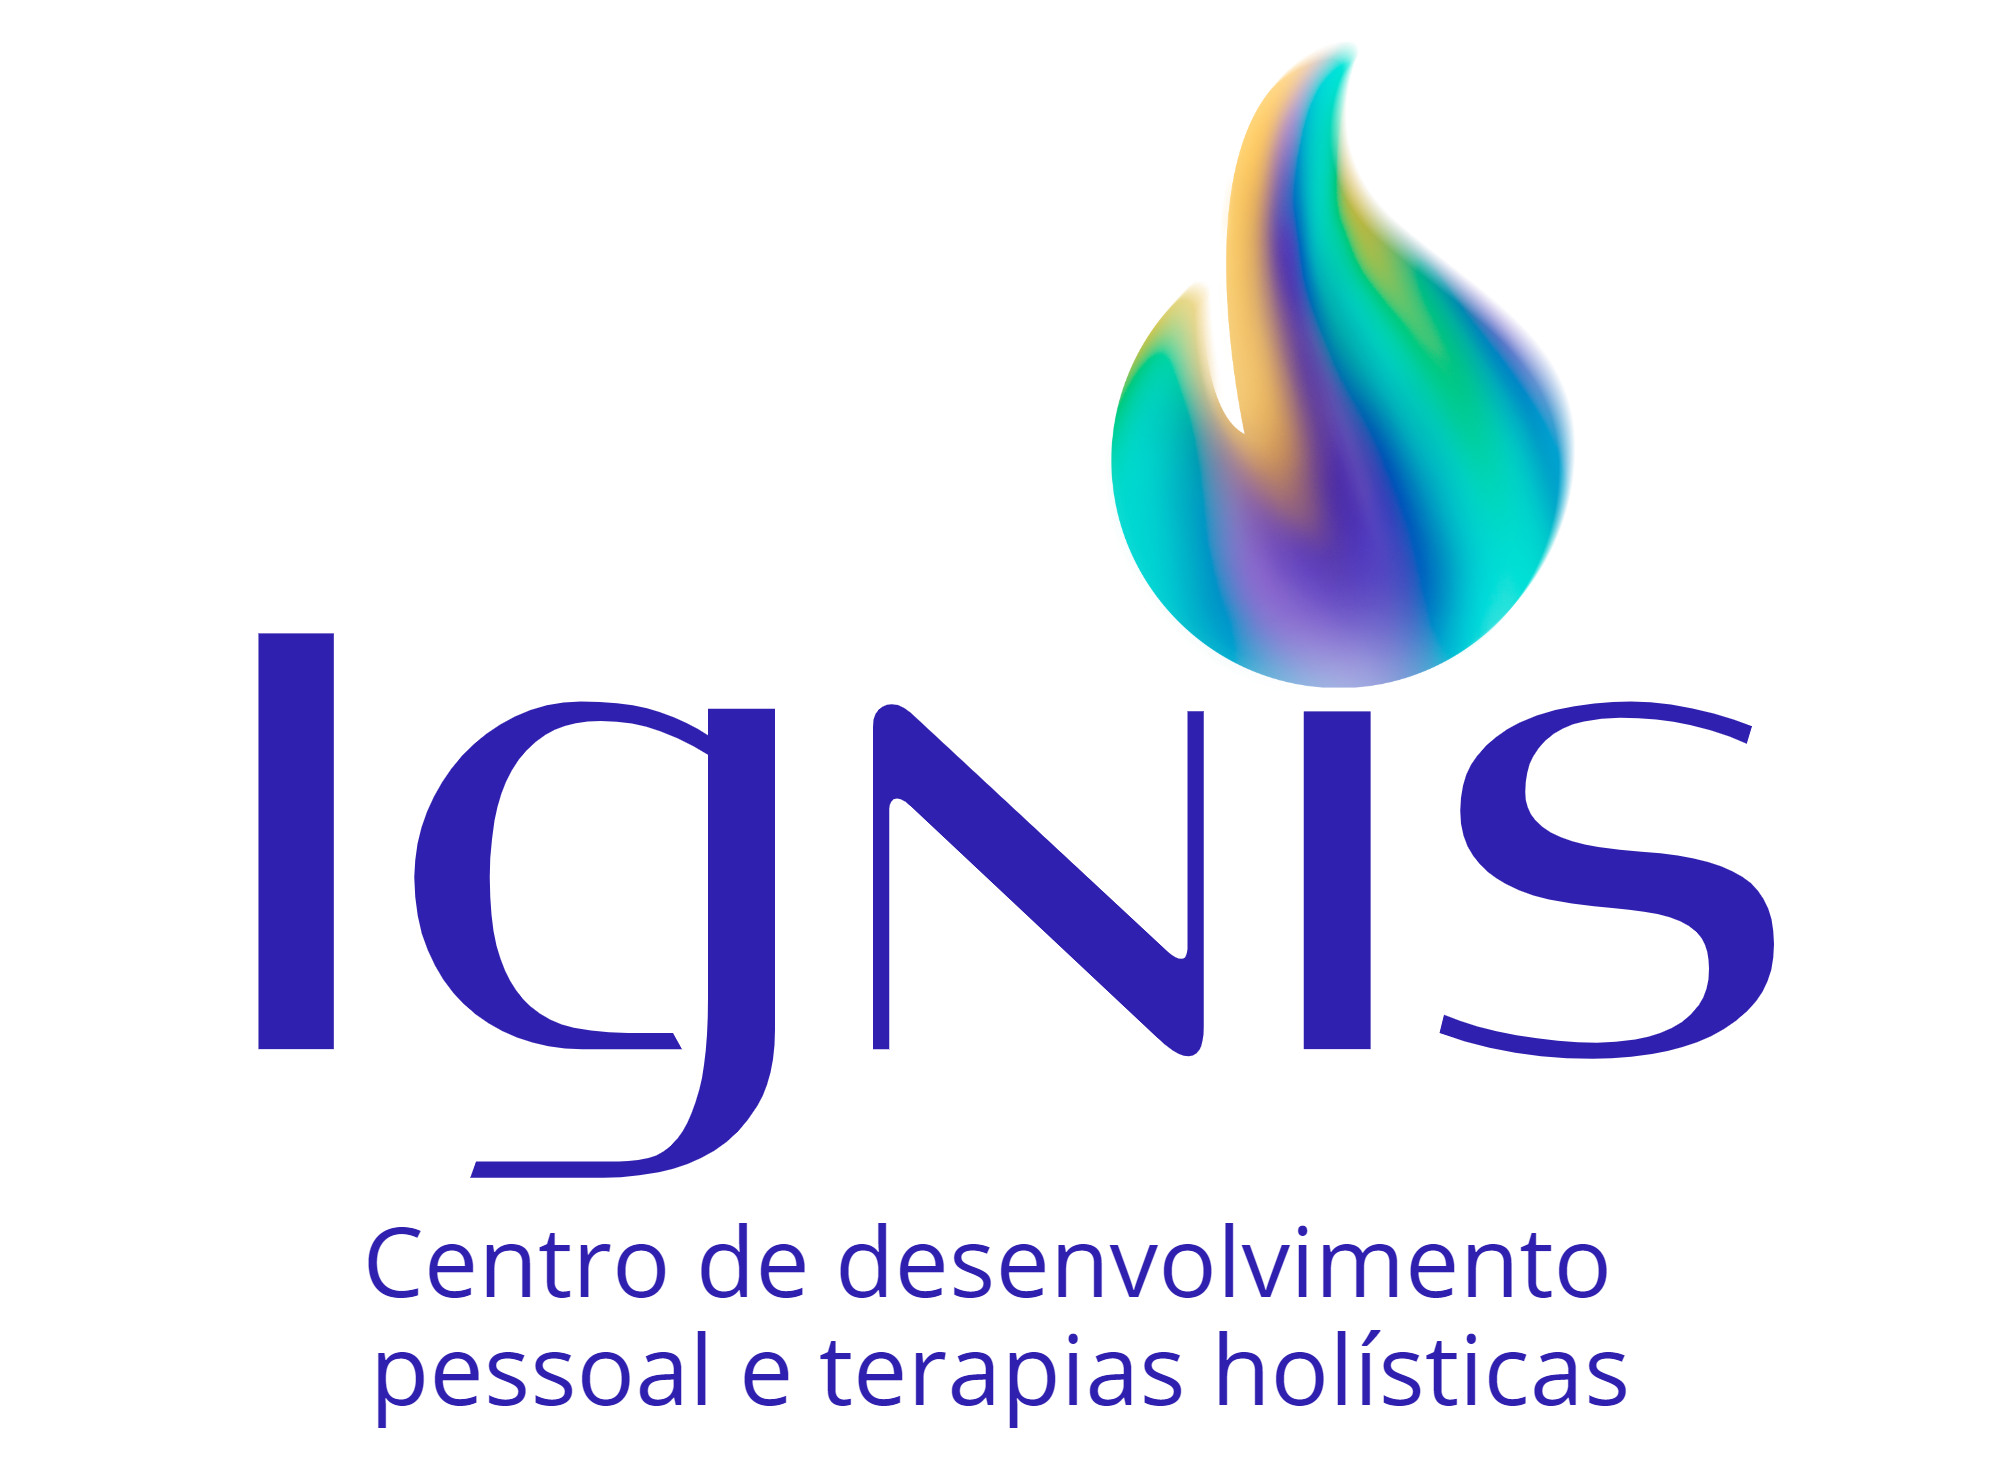 Centro Ignis